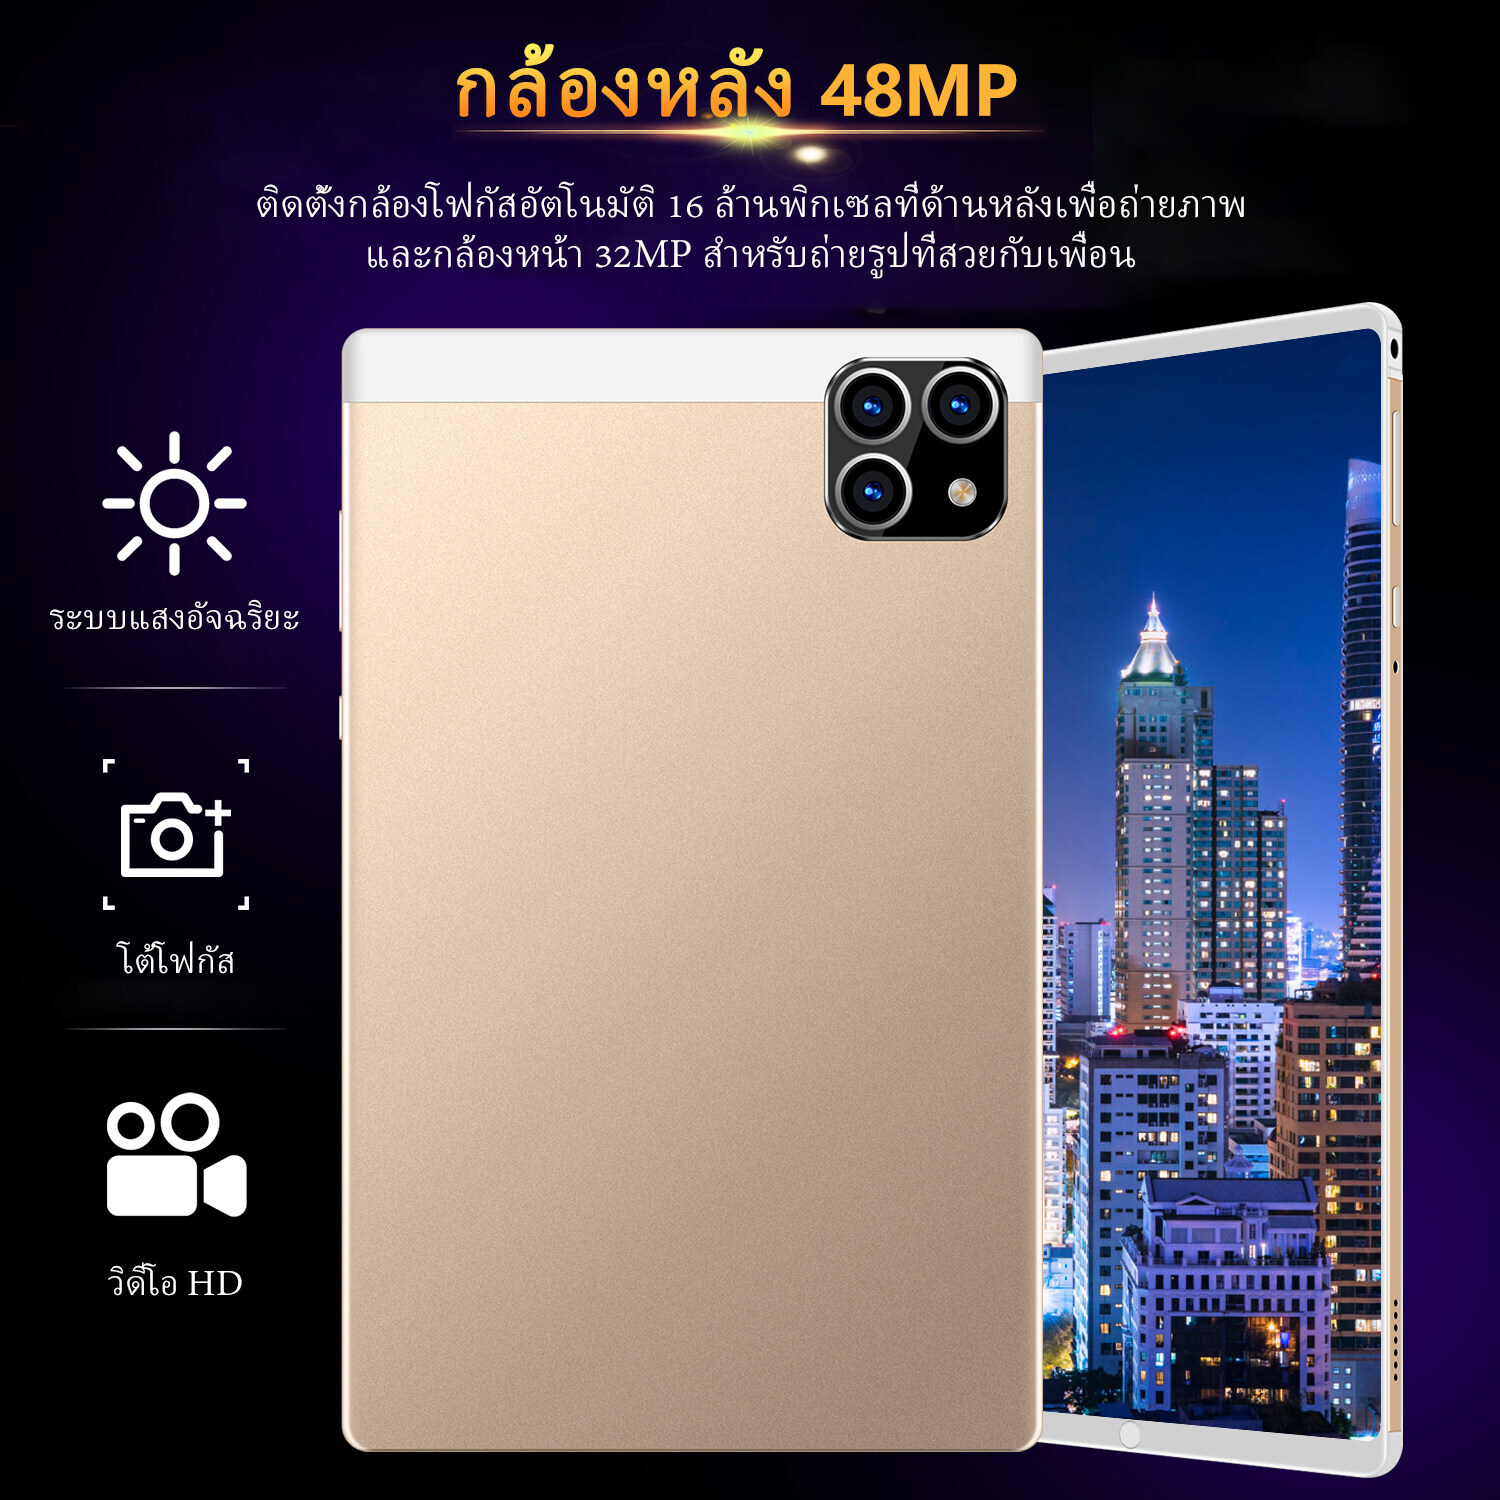 มุมมองเพิ่มเติมของสินค้า [แท็บเล็ต+แป้นพิมพ์] ใหม่ Sg Galaxy Tab 10.4 นิ้ว แท็บเล็ตถูกๆ Tablet RAM16G ROM512G โทรได้ Full HD แท็บเล็ตราคาถูก Andorid 11.0 จัดส่งฟรี รองรับภาษาไทย หน่วยประมวลผล 11-core แท็บเล็ตโทรได้ 4g/5G แท็บเล็ตสำหรับเล่นเกมราคาถูก แทปเล็ตของแท้2022